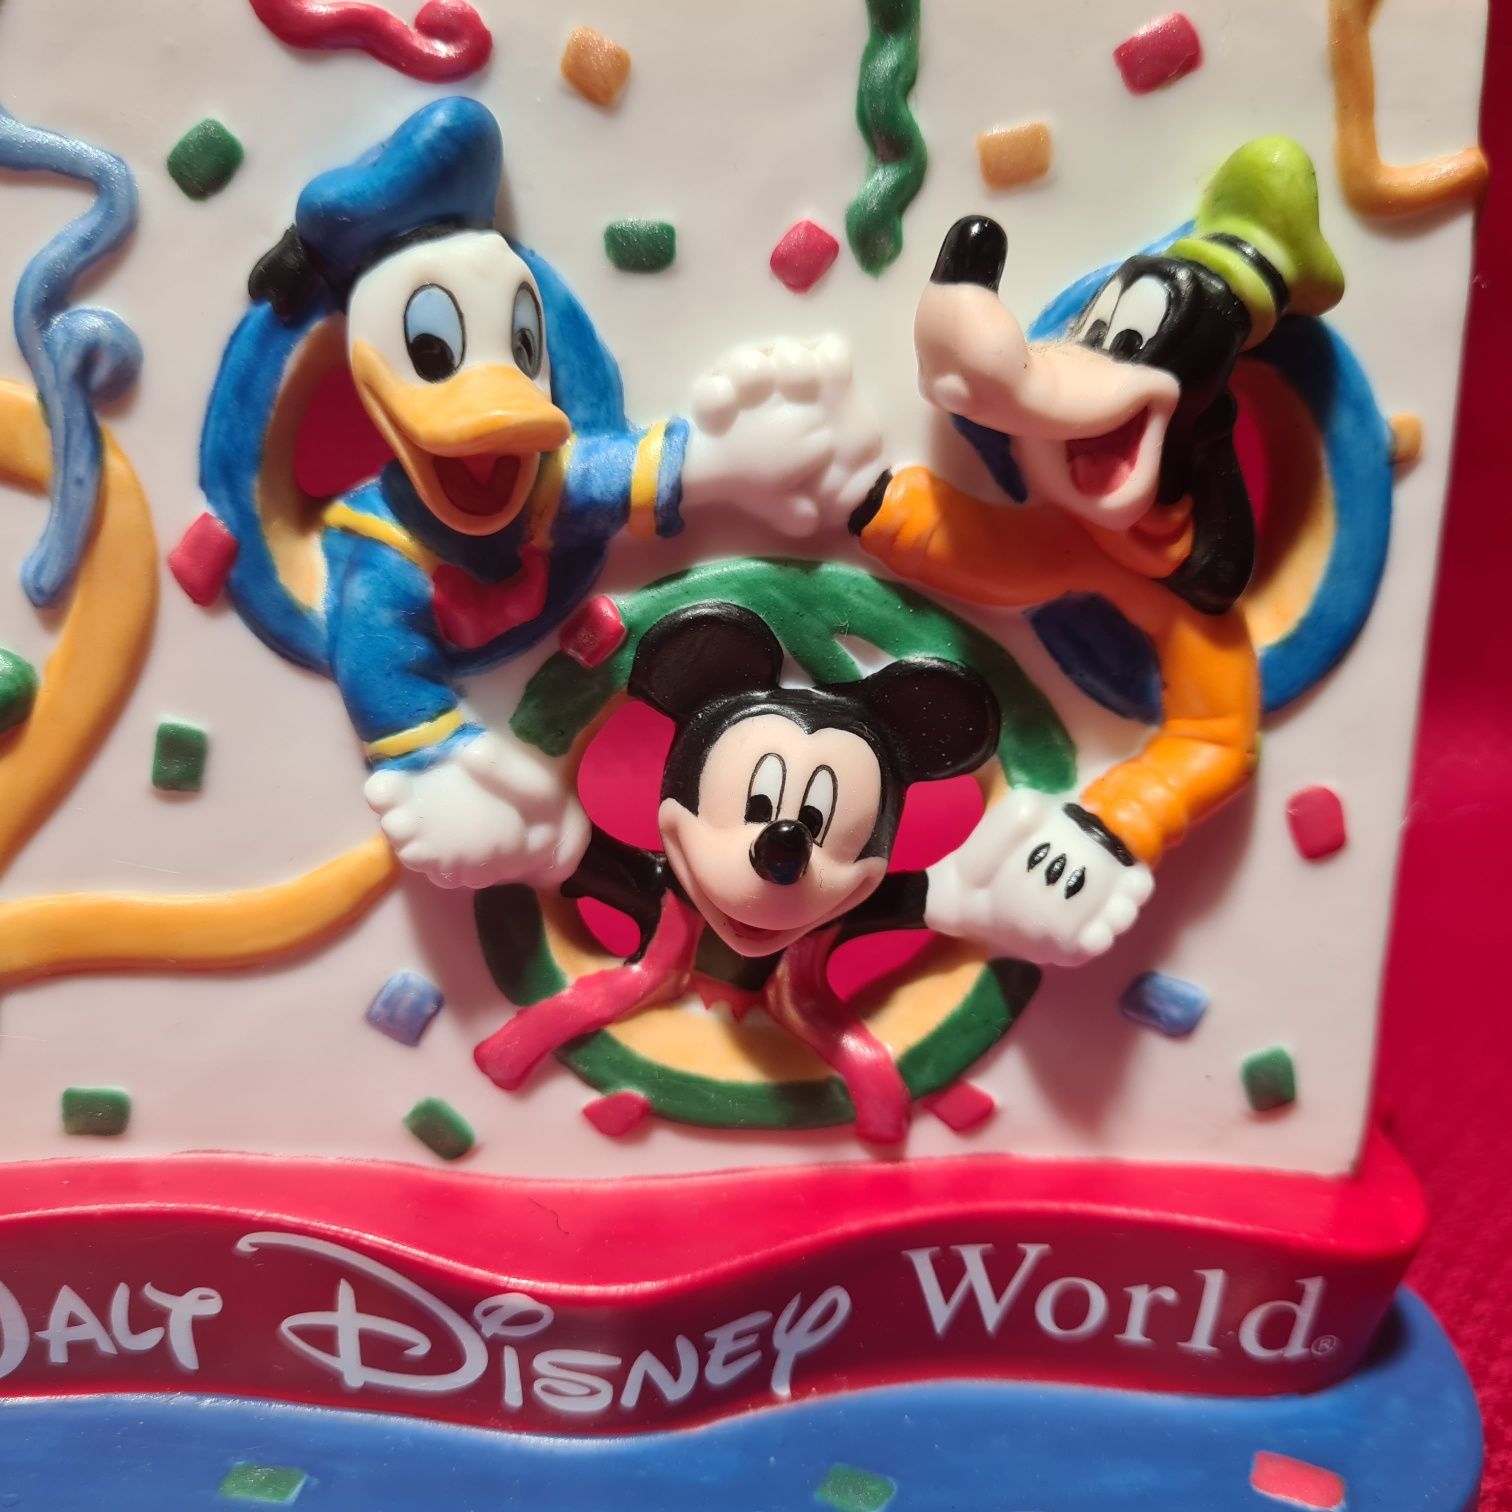 [21] Statuetka  z okazji obchodów Disney World 2000 Mickey Donald i Go